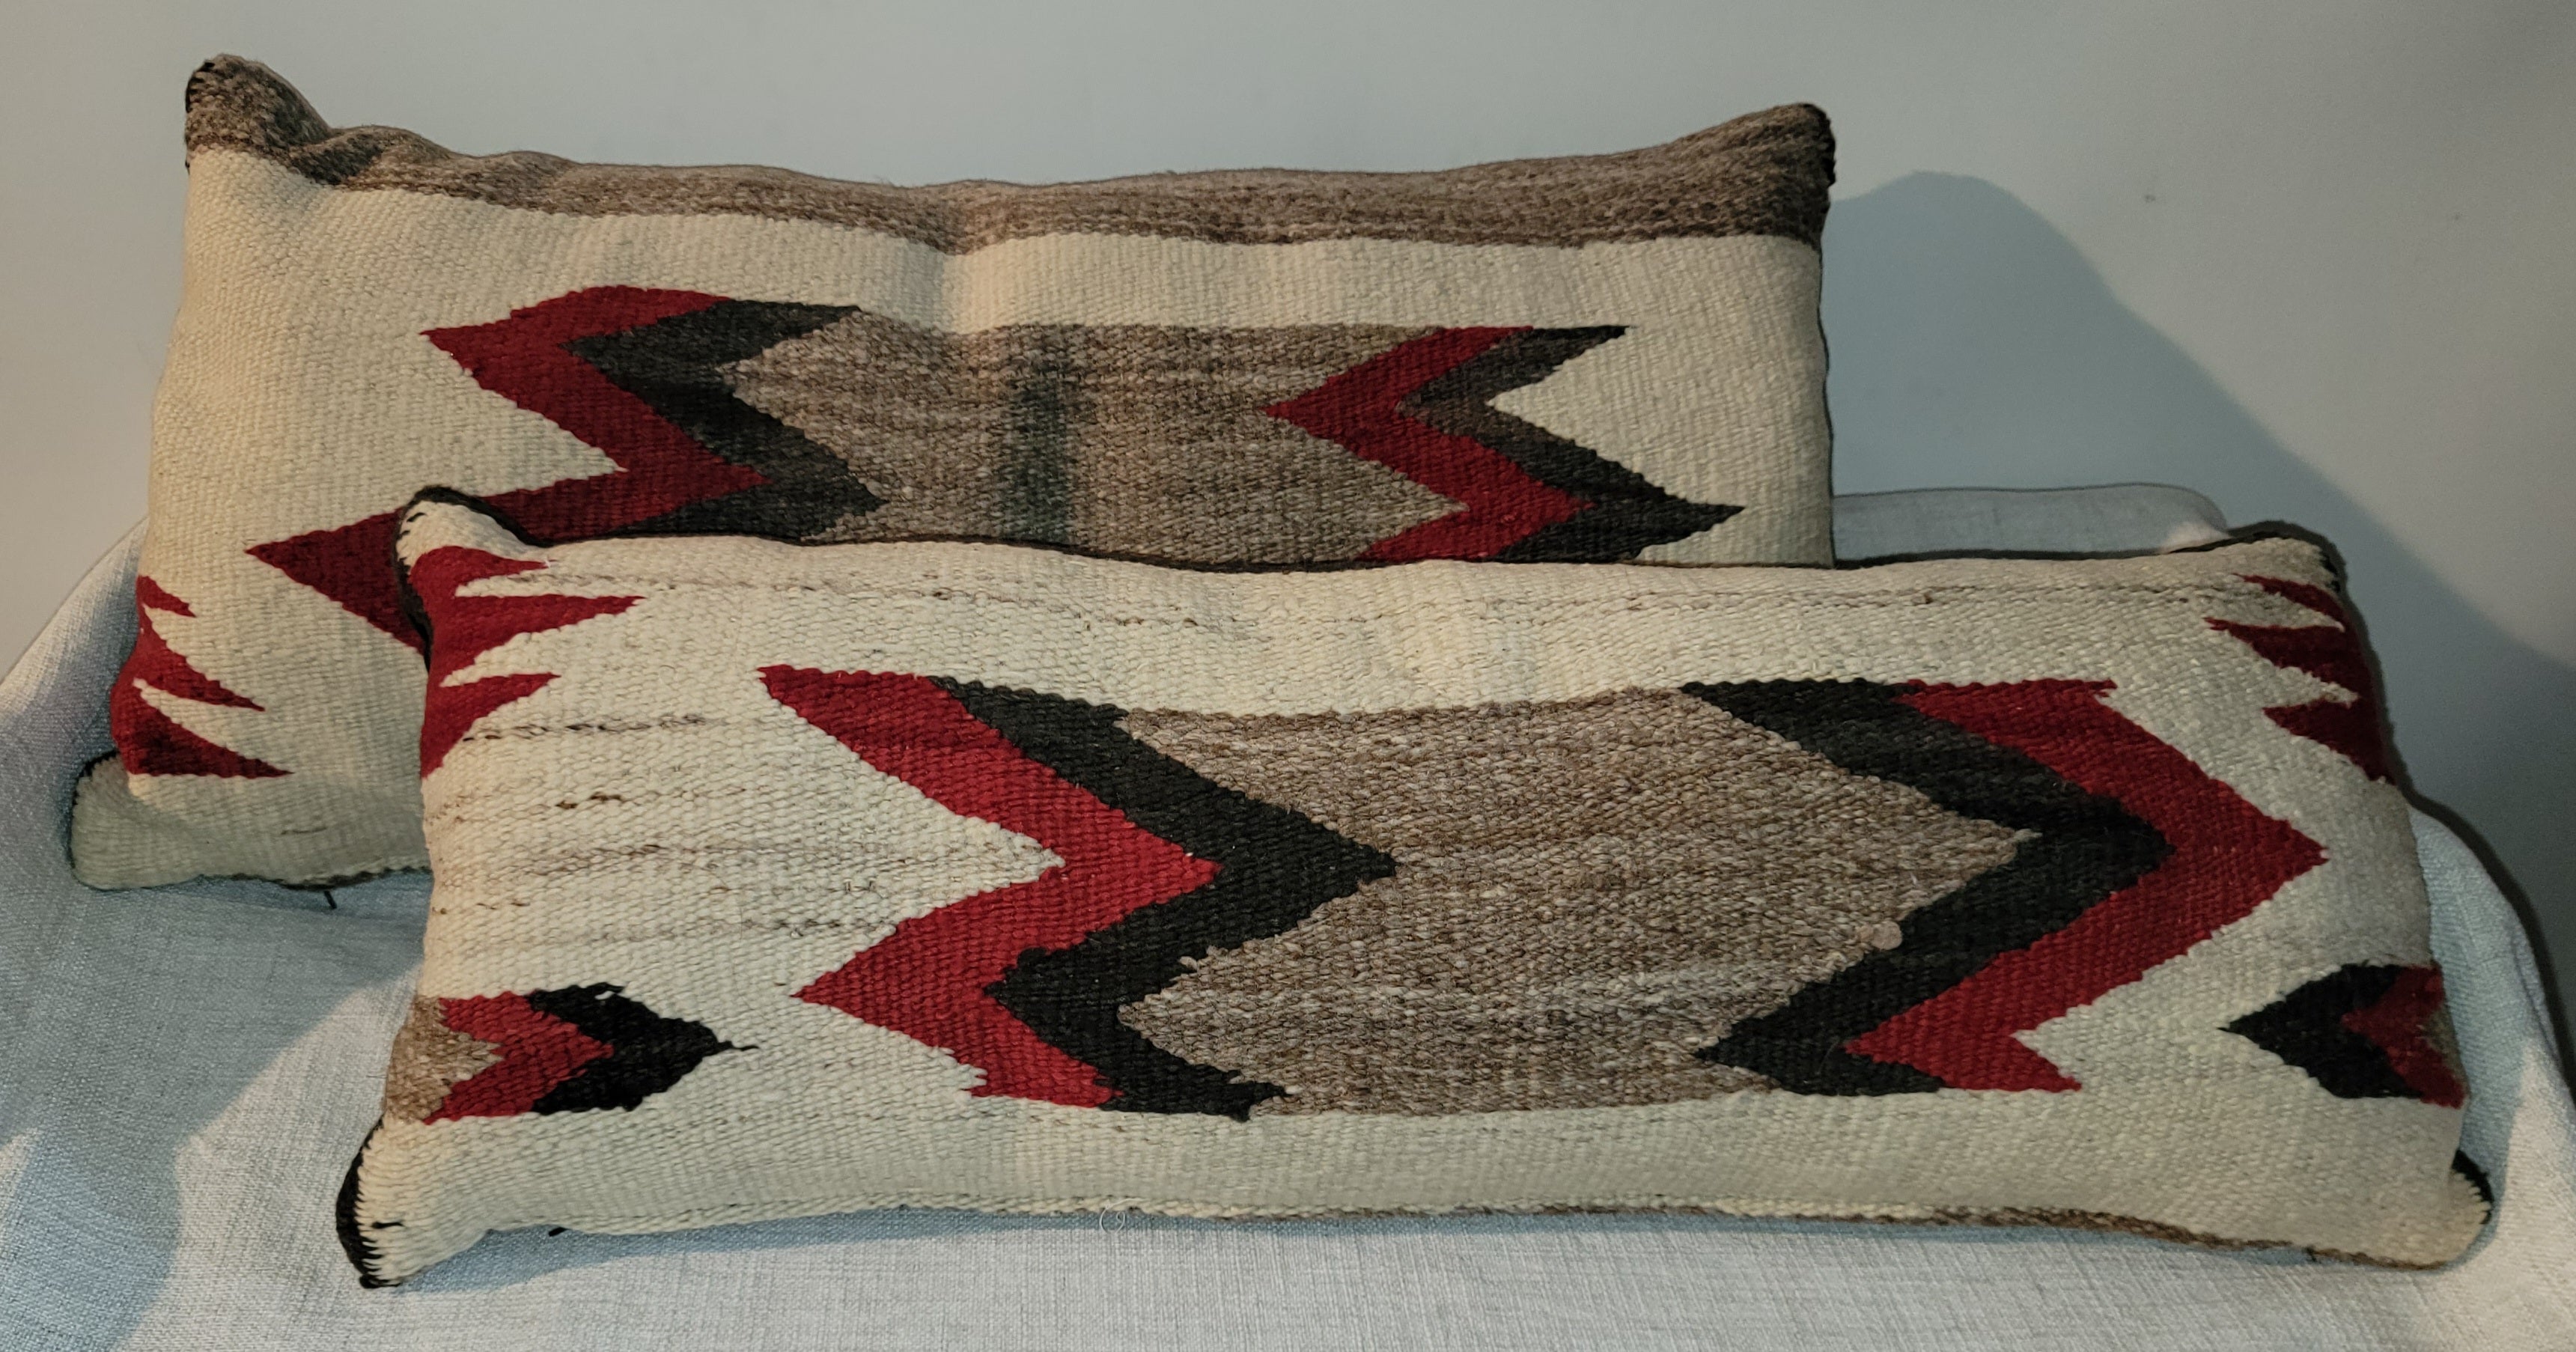 Pair of Indian Weaving Bolster pillows 

pillow 28 x 13
smaller pillow 11 x 28.